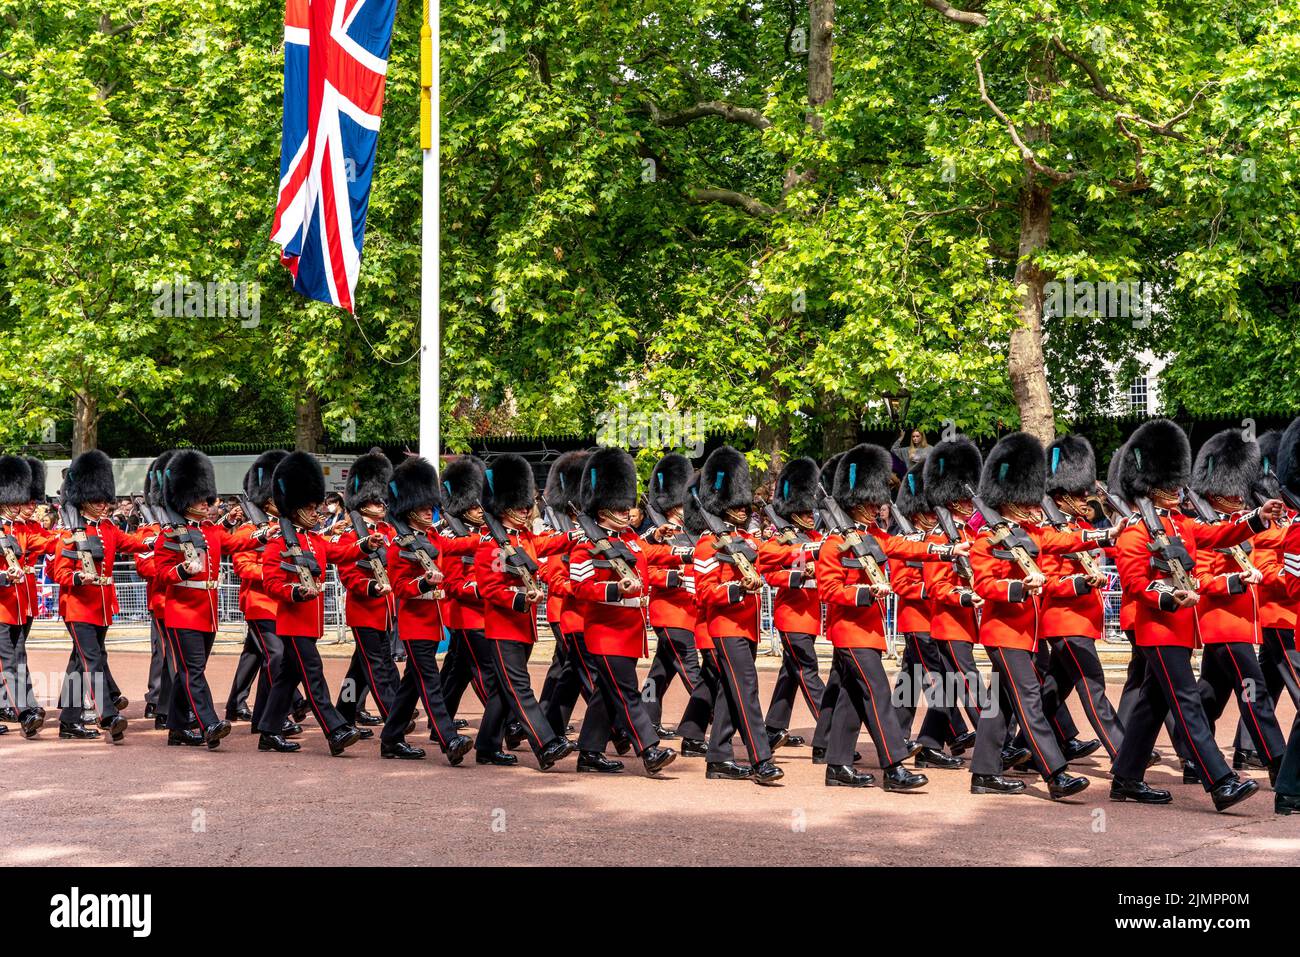 Los guardias irlandeses participan en el desfile de cumpleaños de la reina marchando a lo largo del centro comercial para la ceremonia de Trooping of the Colour, Londres, Reino Unido. Foto de stock